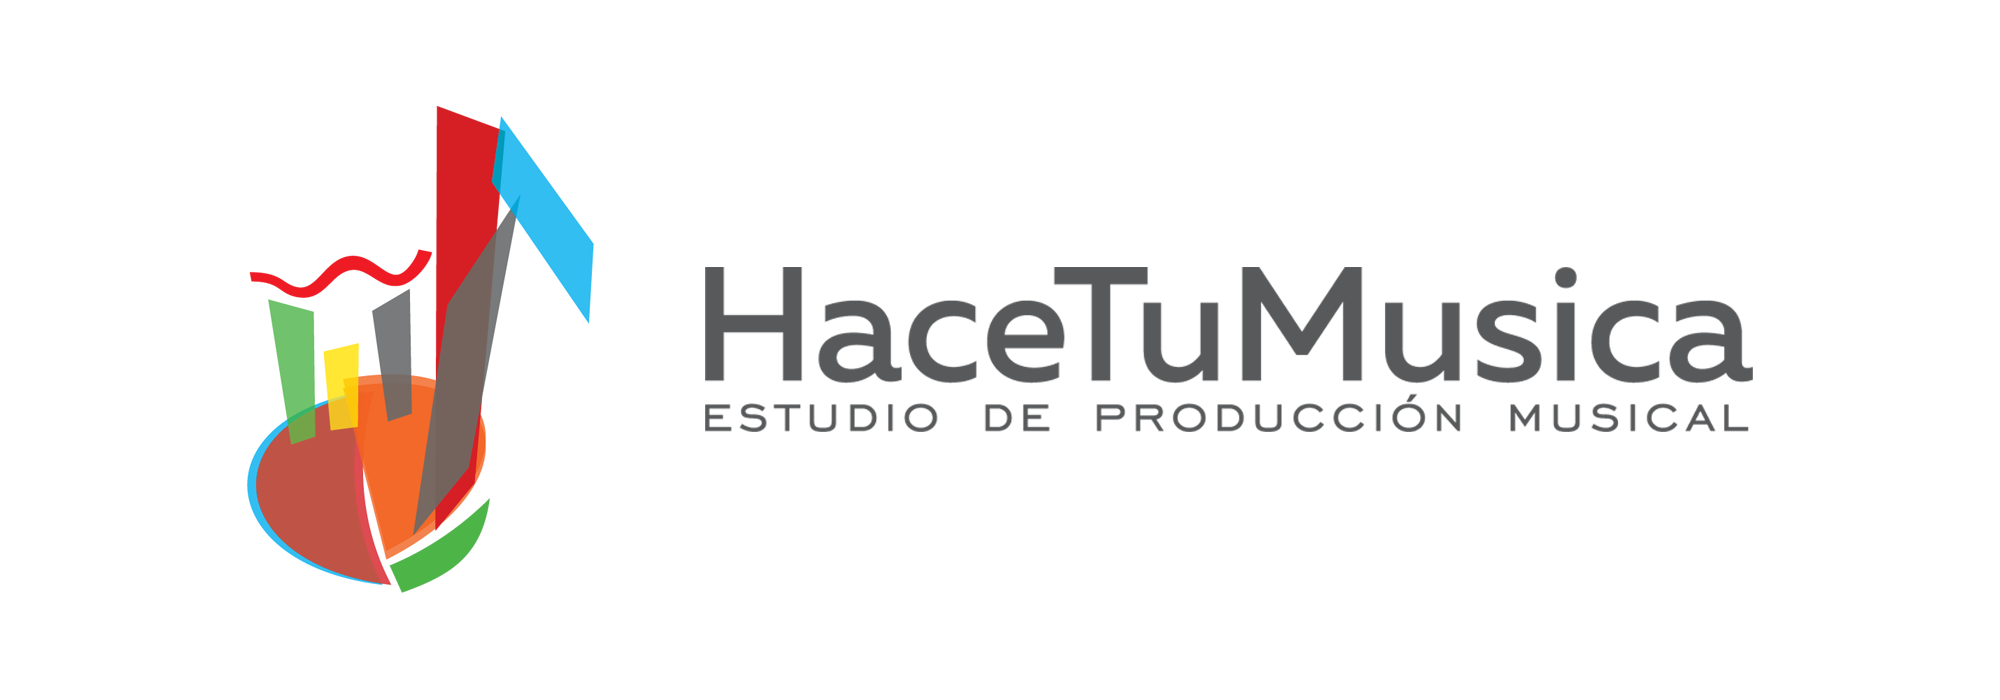 HaceTuMusica